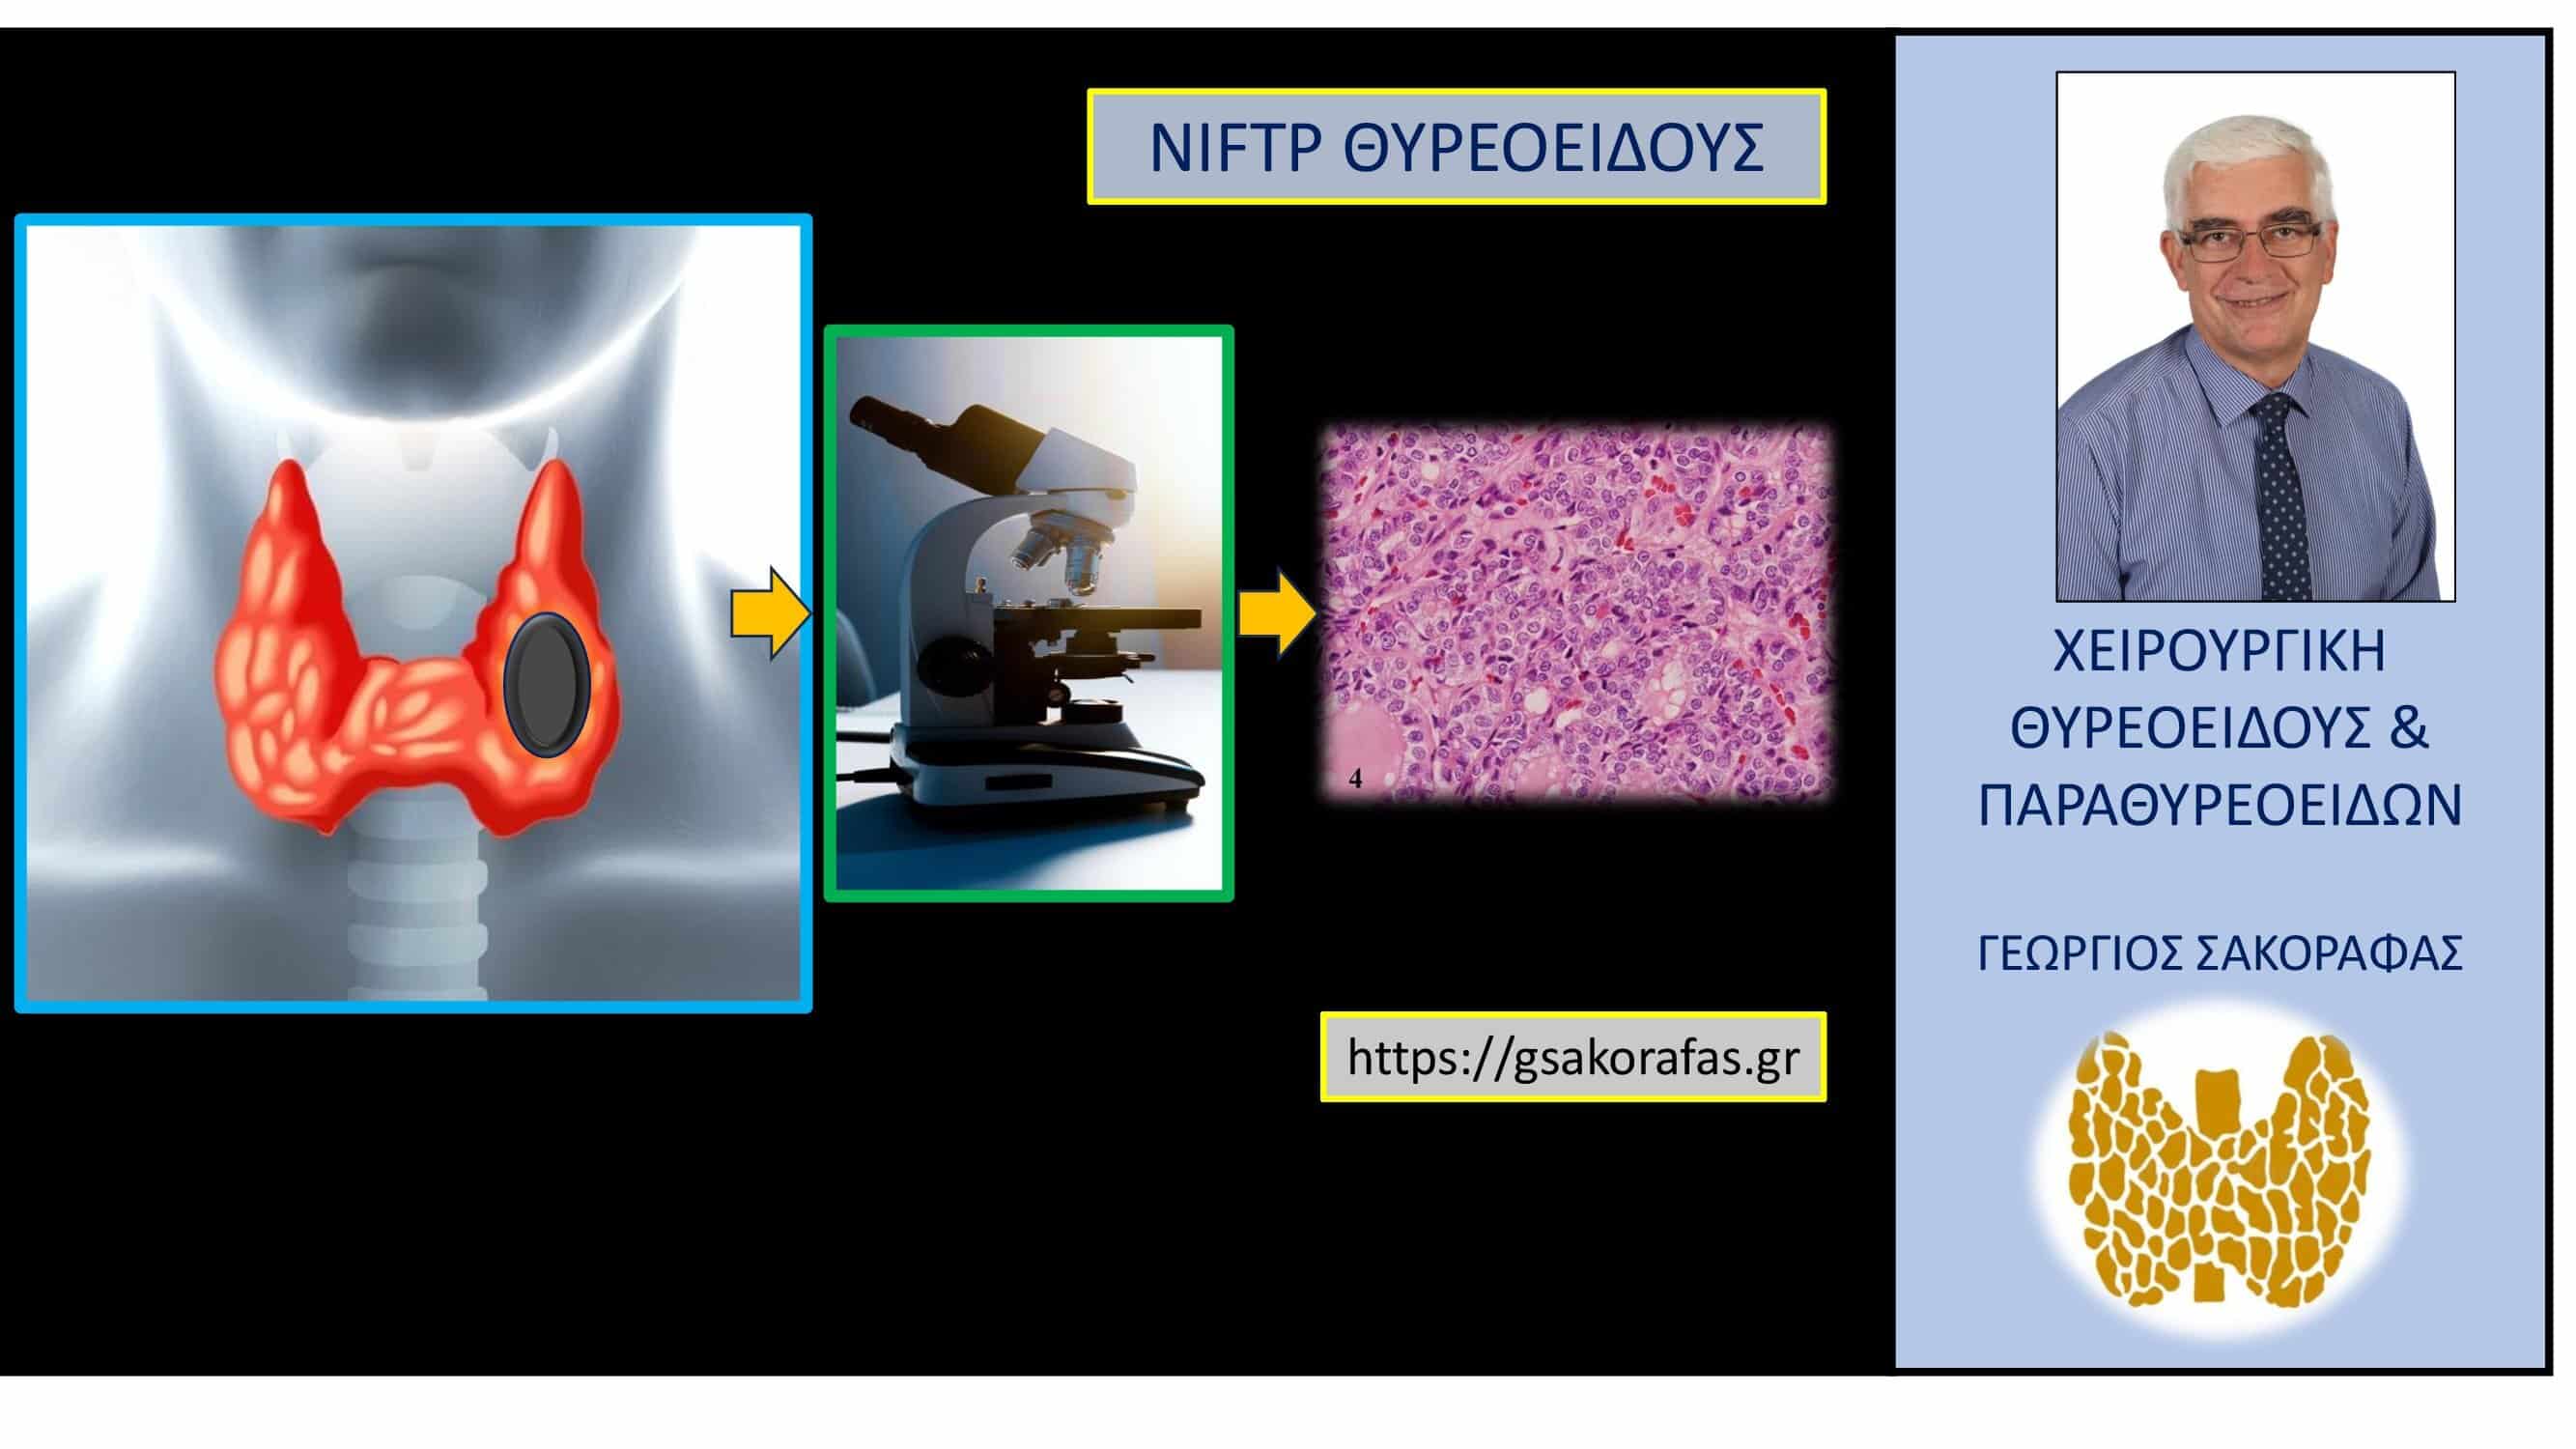 NIFTP θυρεοειδούς – διάγνωση